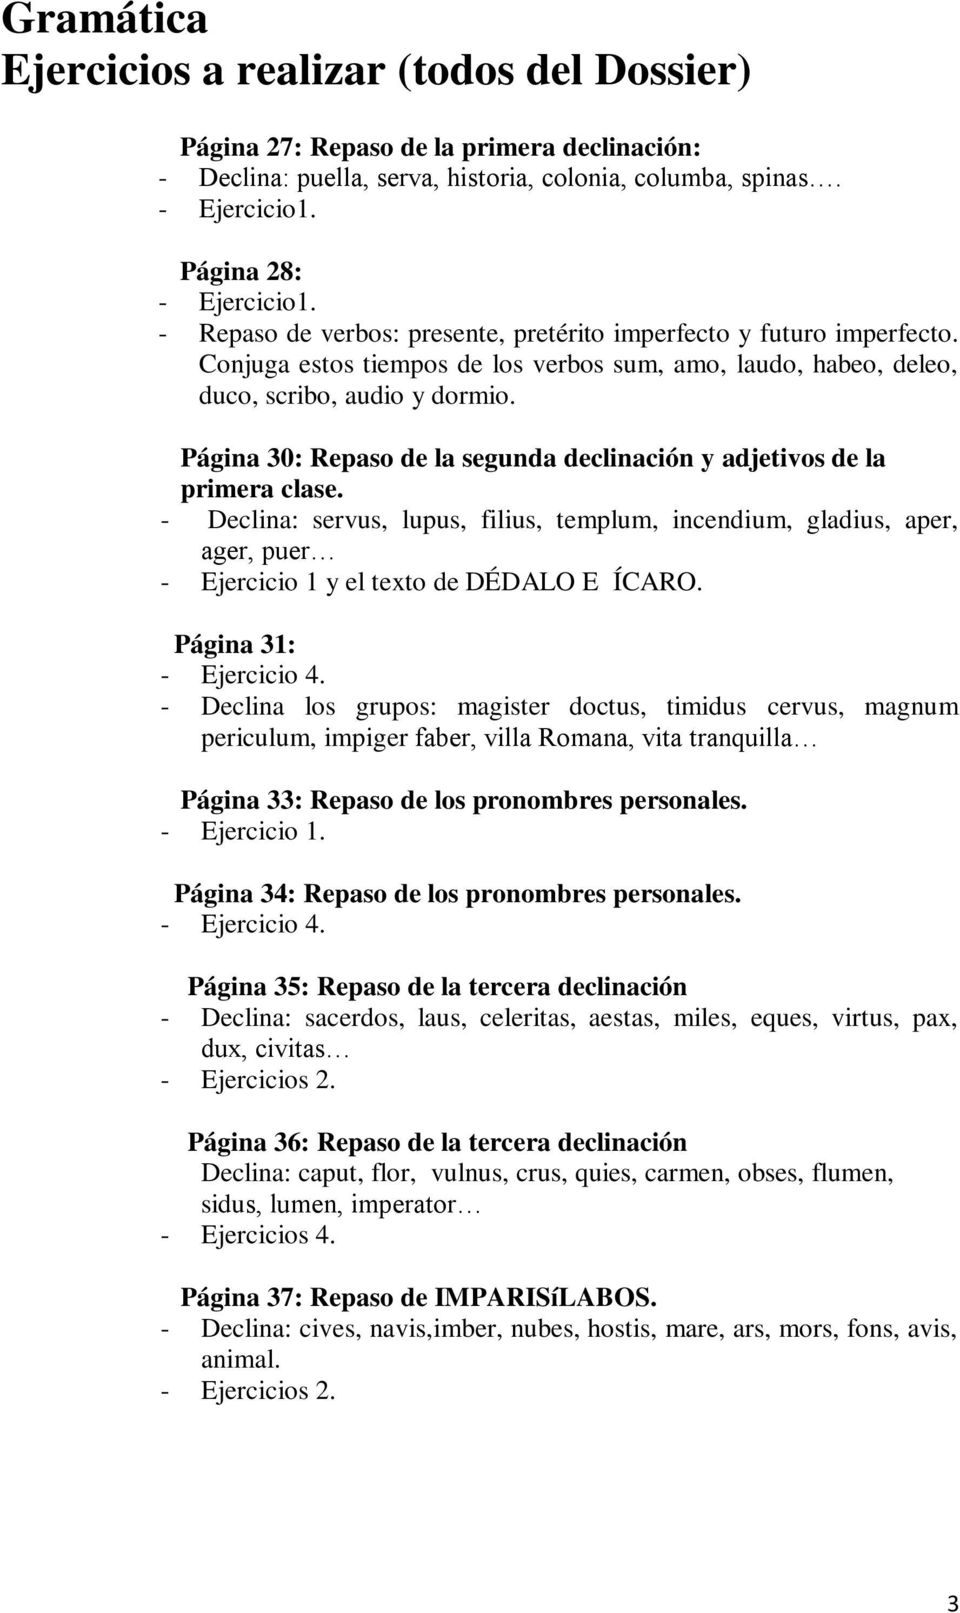 Página 30: Repaso de la segunda declinación y adjetivos de la primera clase. - Declina: servus, lupus, filius, templum, incendium, gladius, aper, ager, puer - Ejercicio 1 y el texto de DÉDALO E ÍCARO.